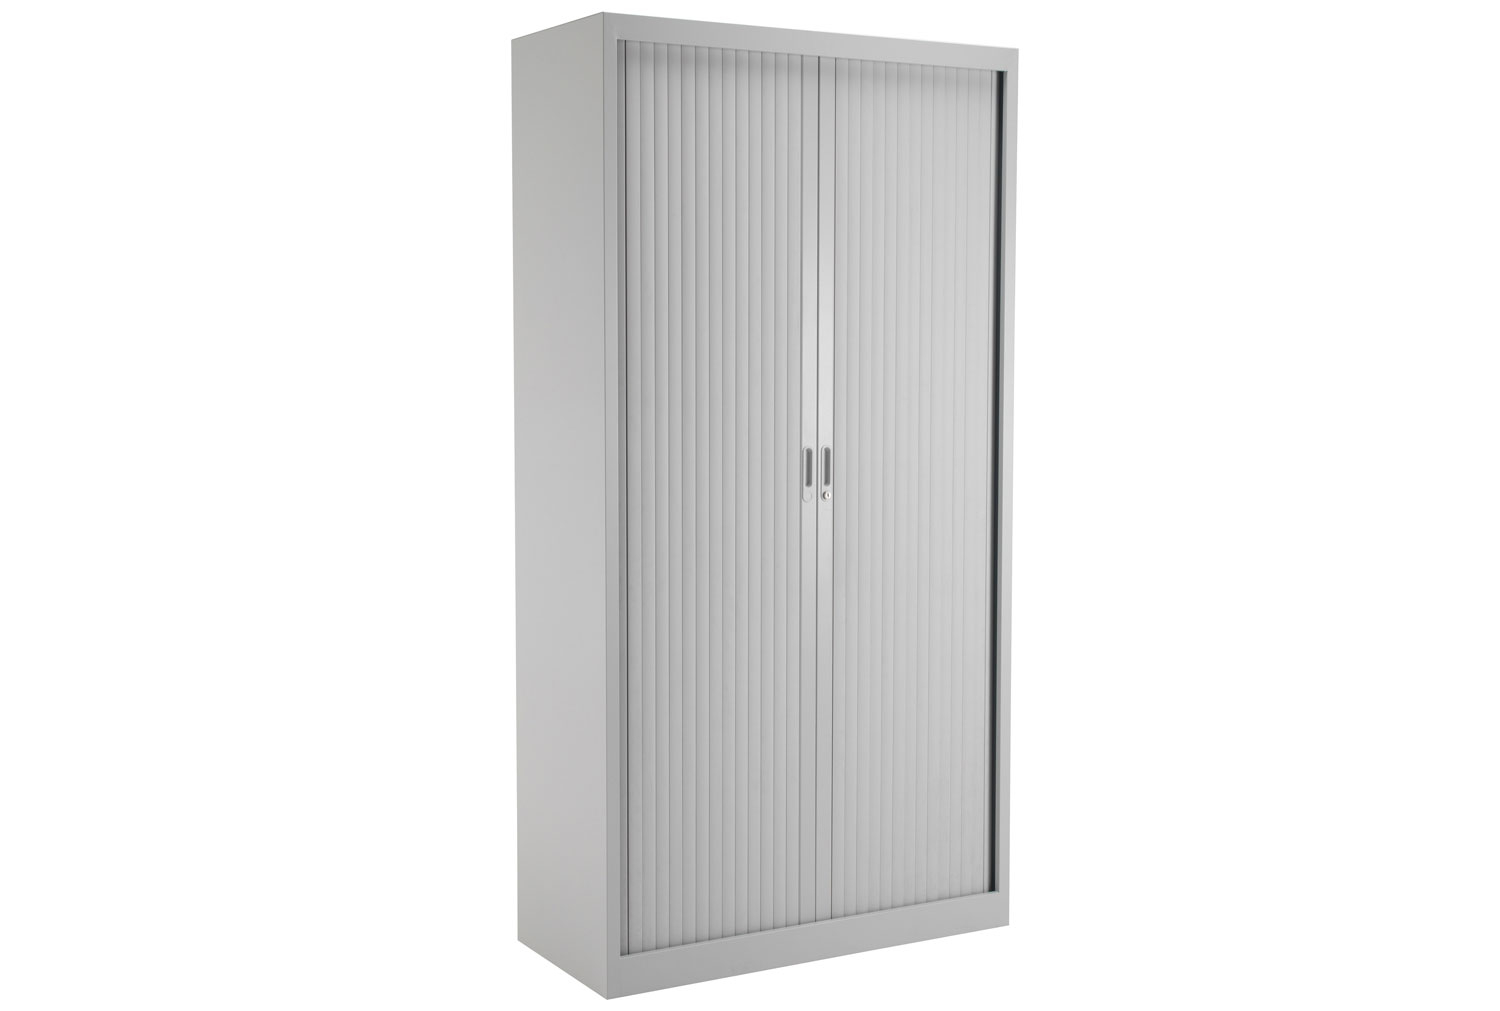 Value Line Metal Tambour Door Office Cupboards, 4 Shelf - 100wx45dx195h (cm), Grey, Express Delivery